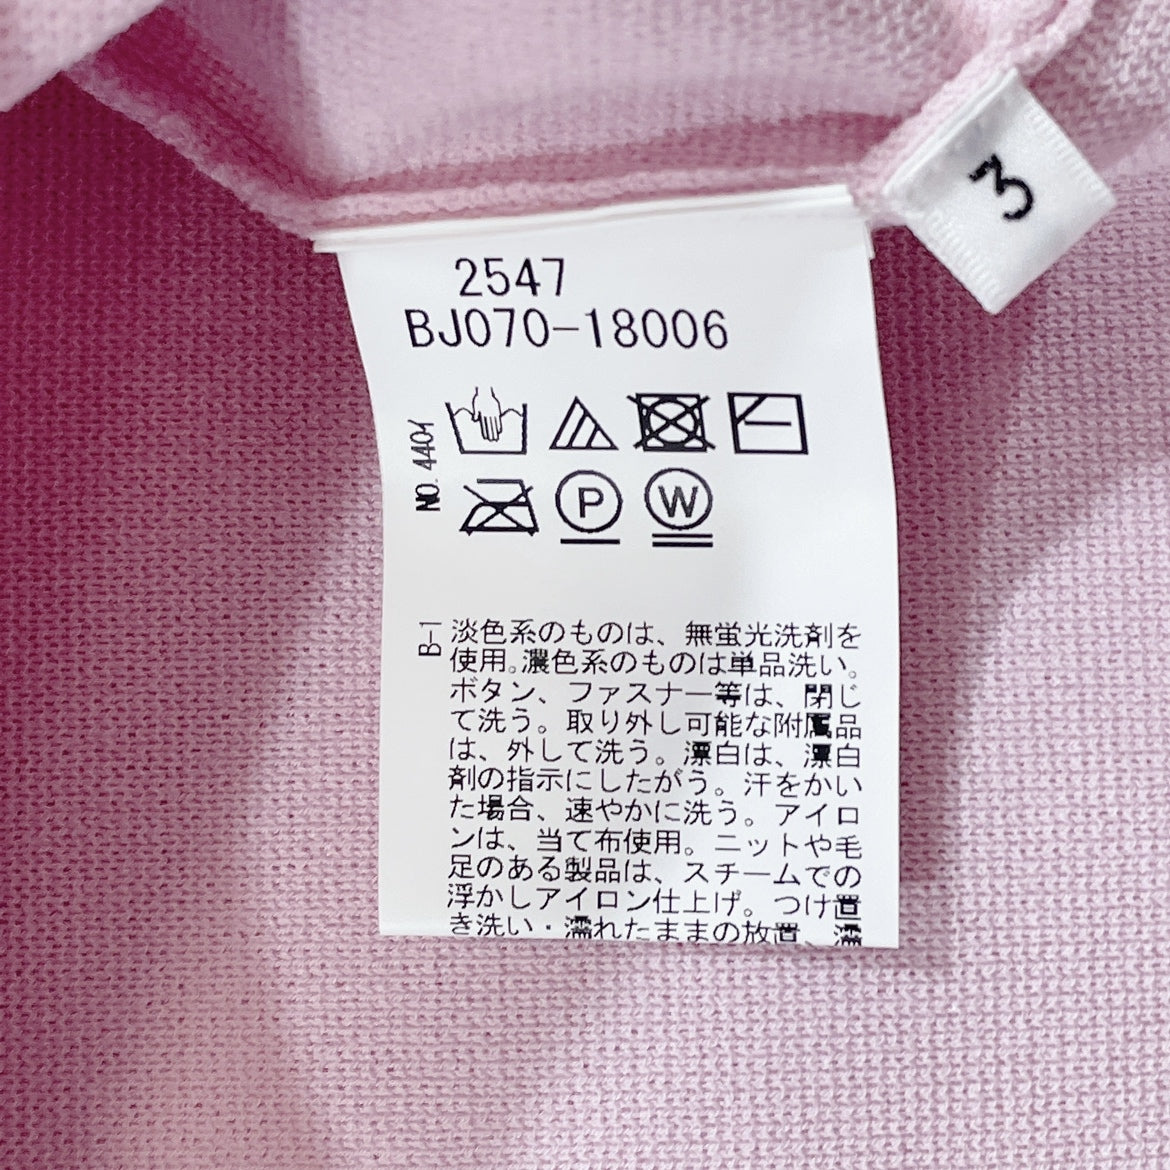 新品 レディース3 TAKEO KIKUCHI トレーナー ピンク かわいい 無地 オシャレ タグ付き 未使用 タケオキクチ 【15892】